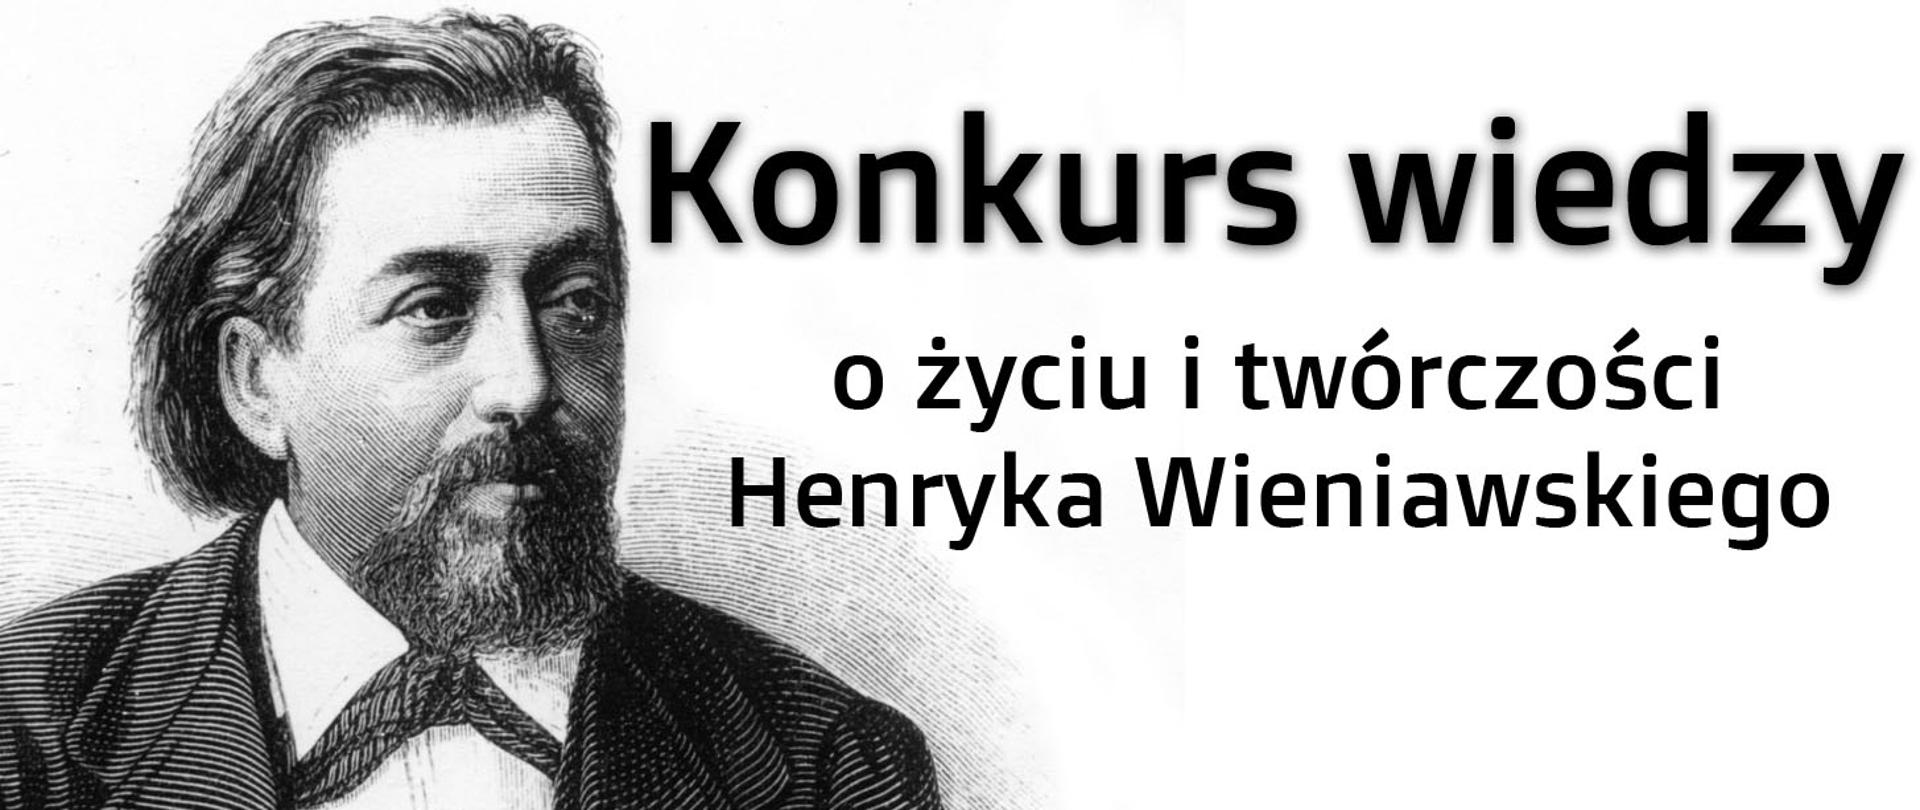 Zdjęcie przedstawia portret Henryka wieniawskiego. Obok umieszczone jest napis konkurs wiedzy o życiu i twórczości H. Wieniawskego